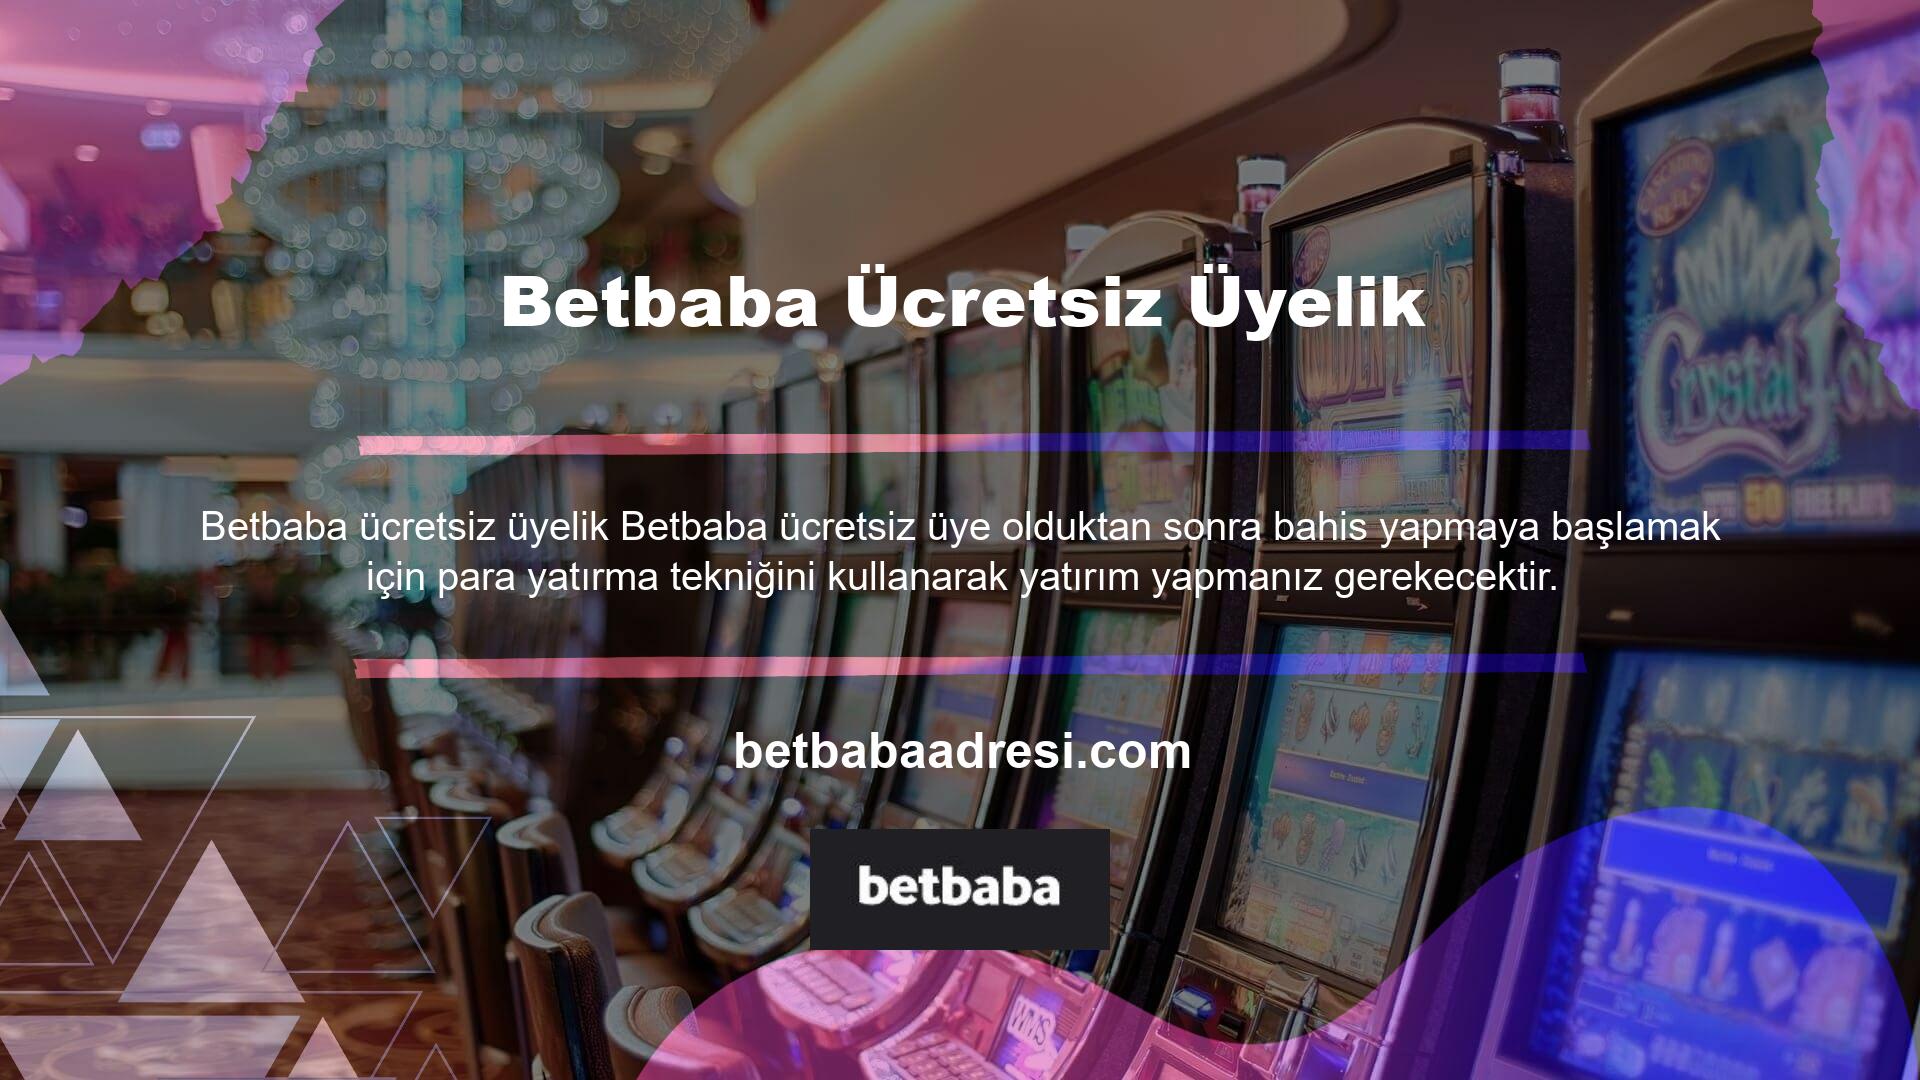 Betbaba para yatırma ve diğer işlemler için Betbaba canlı destek hattına 7/24 ulaşabilirsiniz